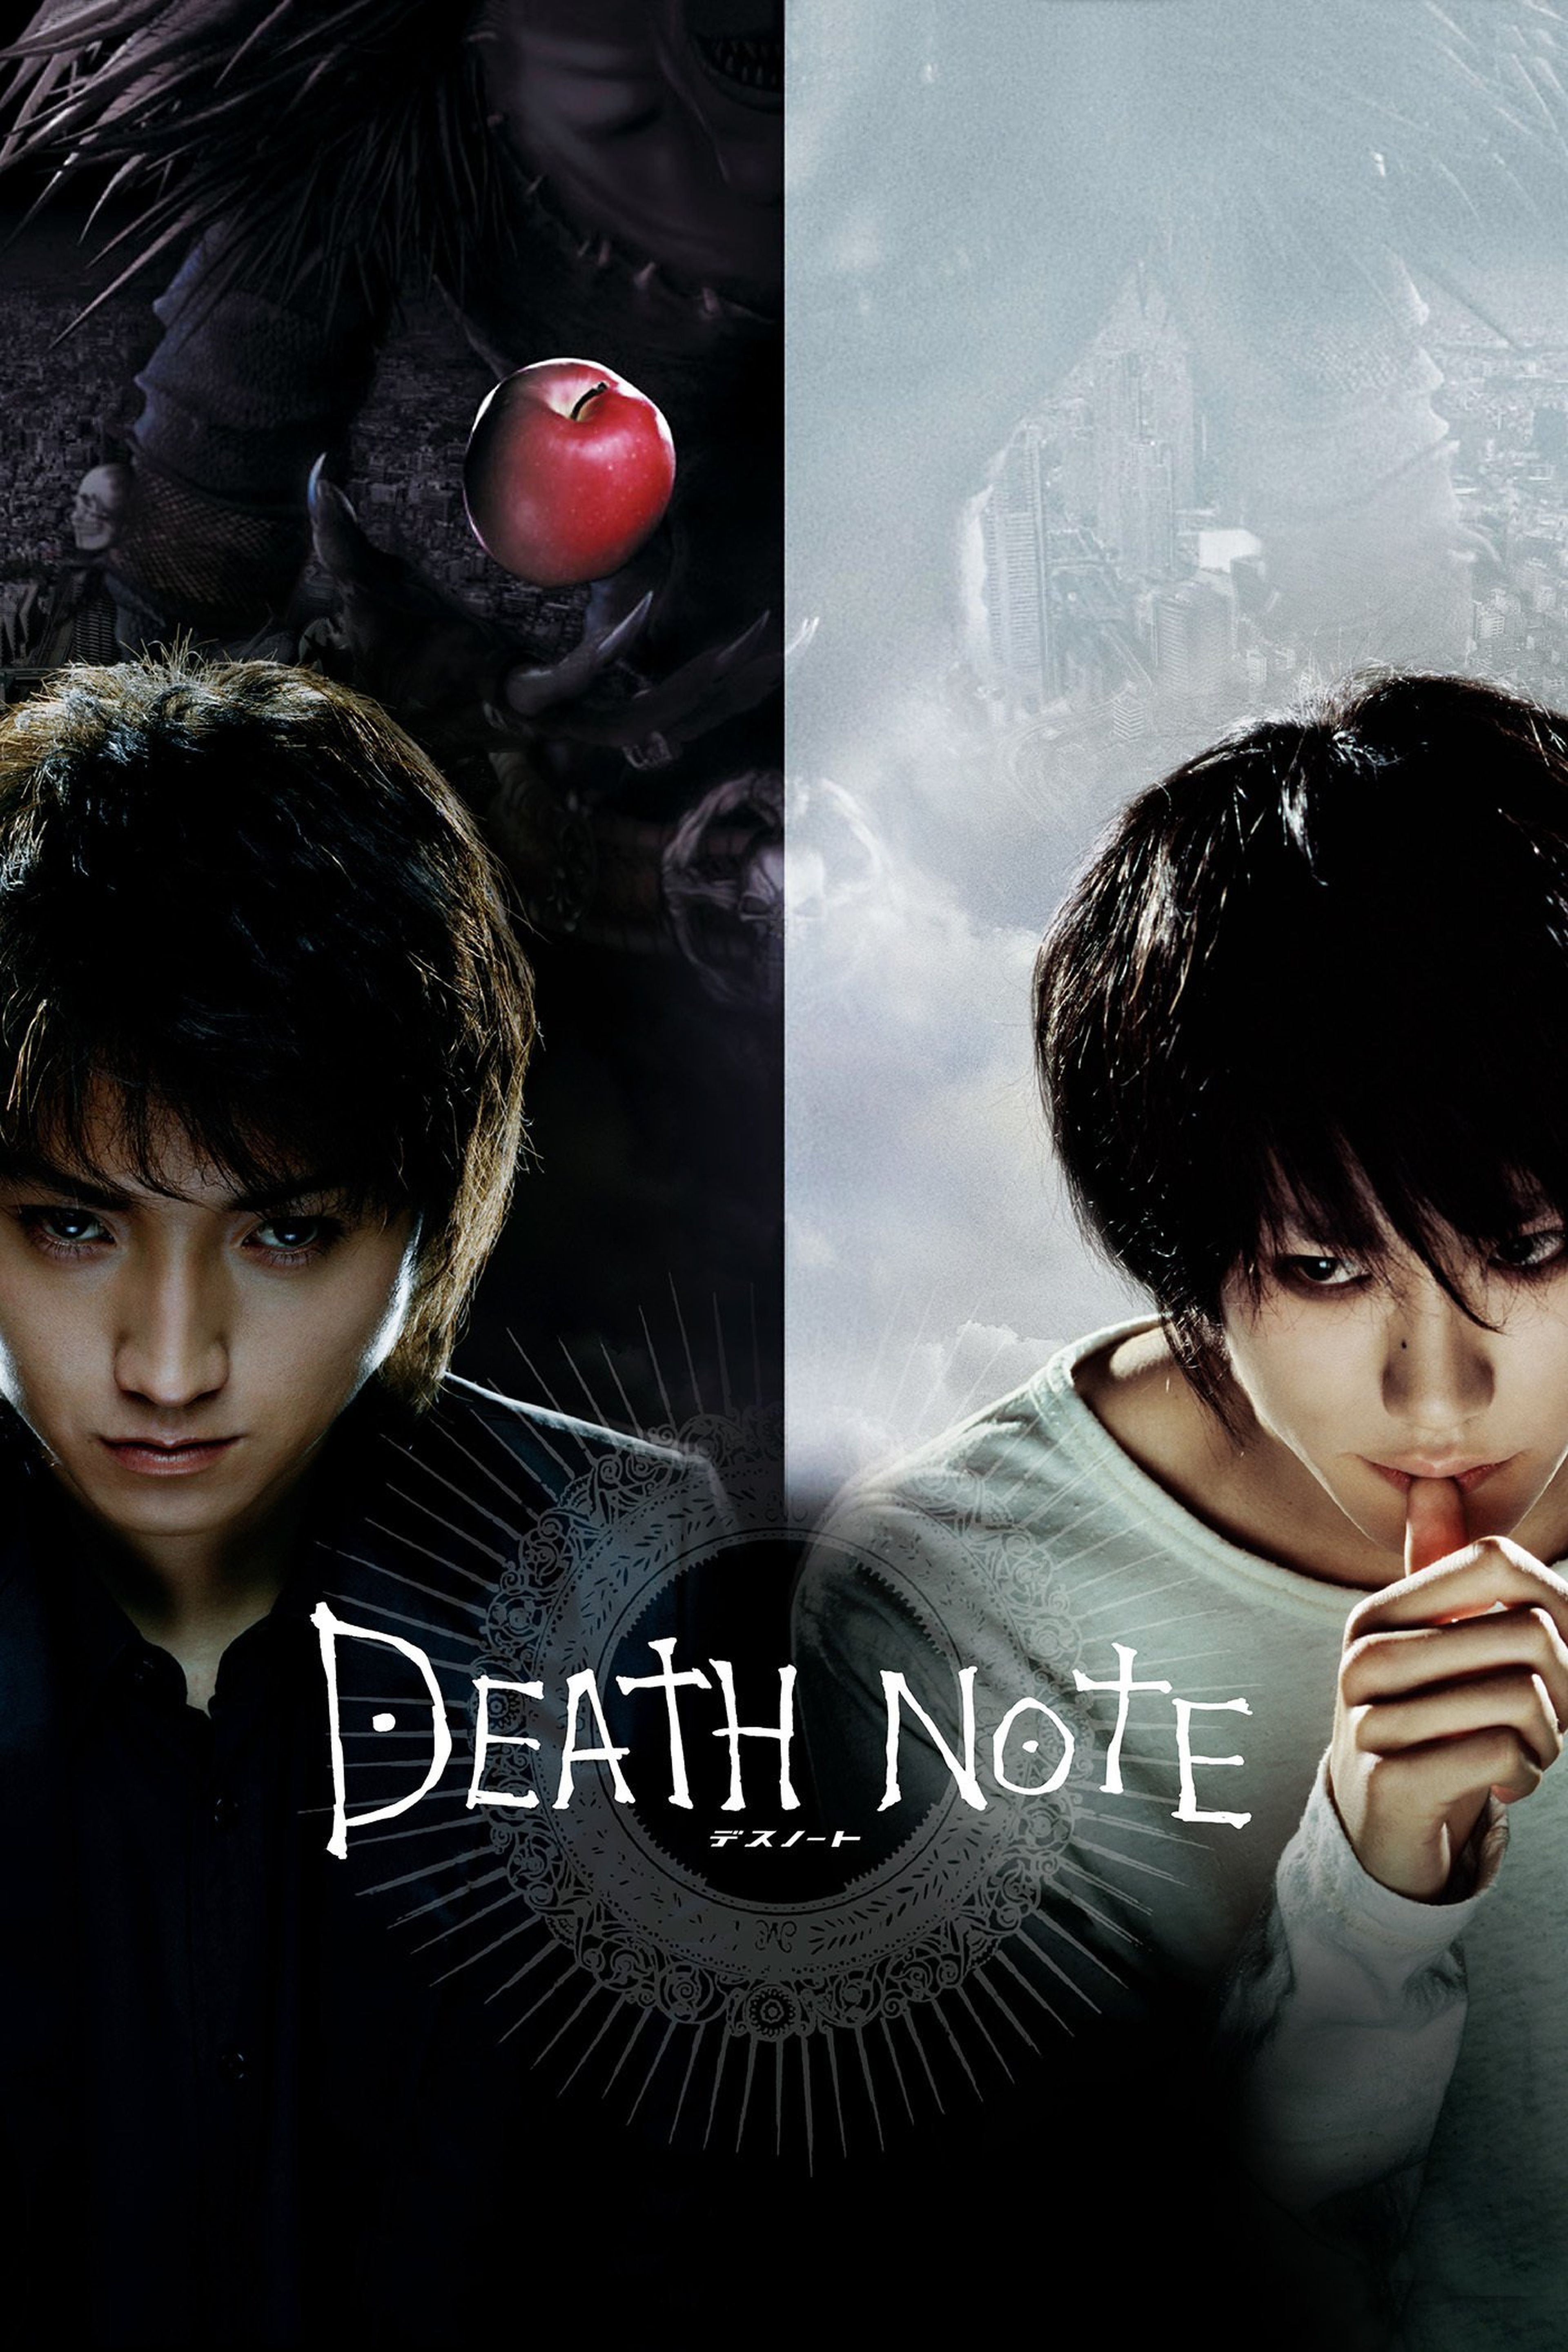 Crítica  Death Note: O Filme (2006) - Plano Crítico